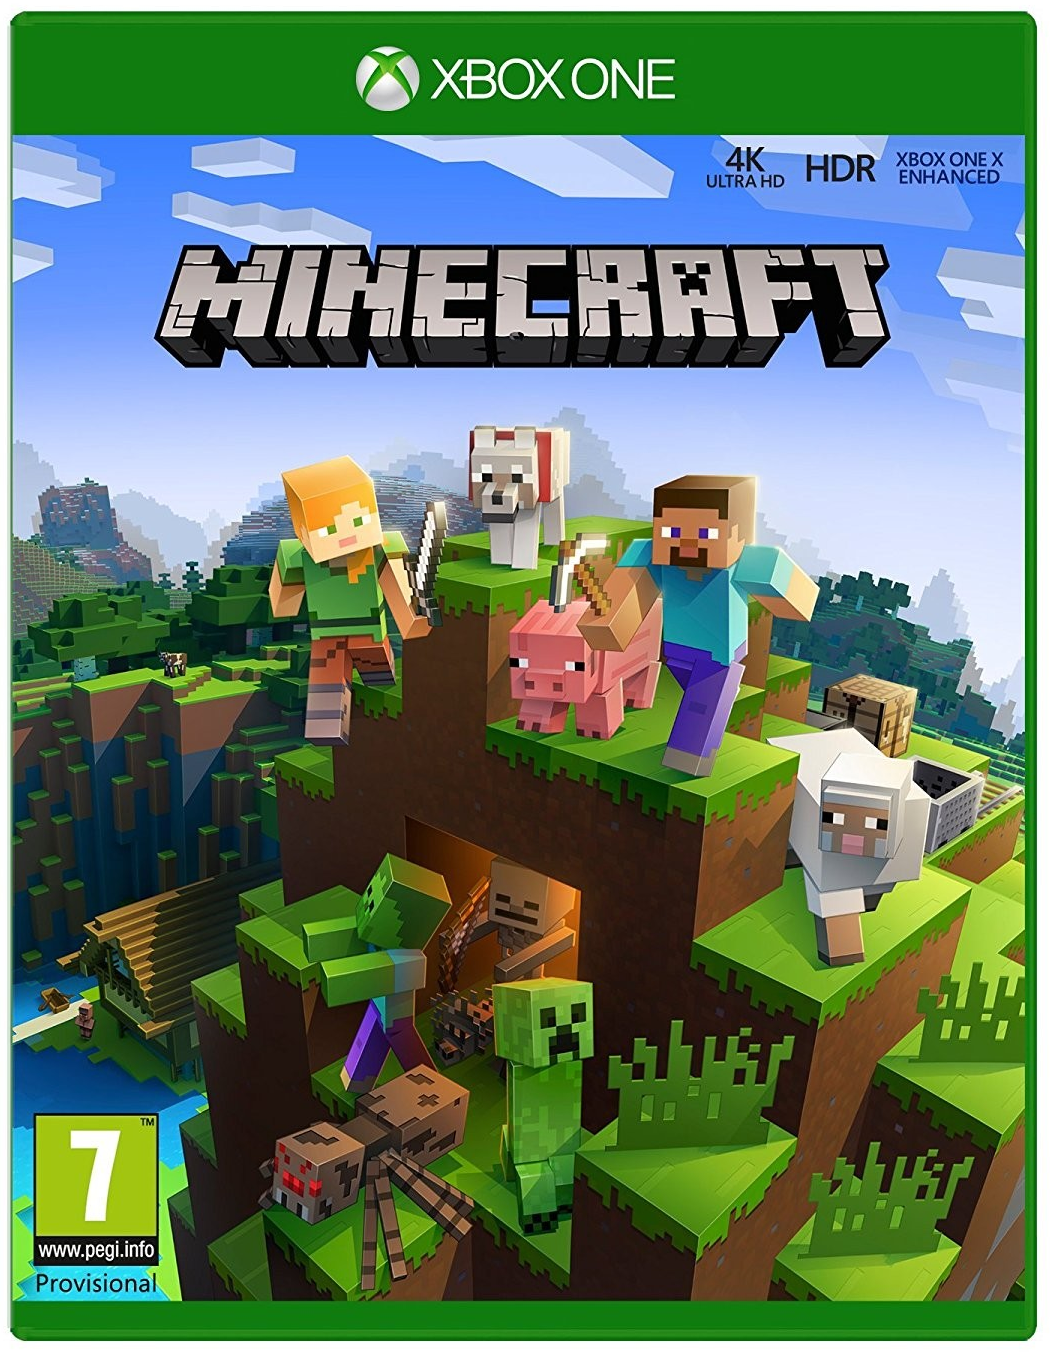 Minecraft minigames enhance